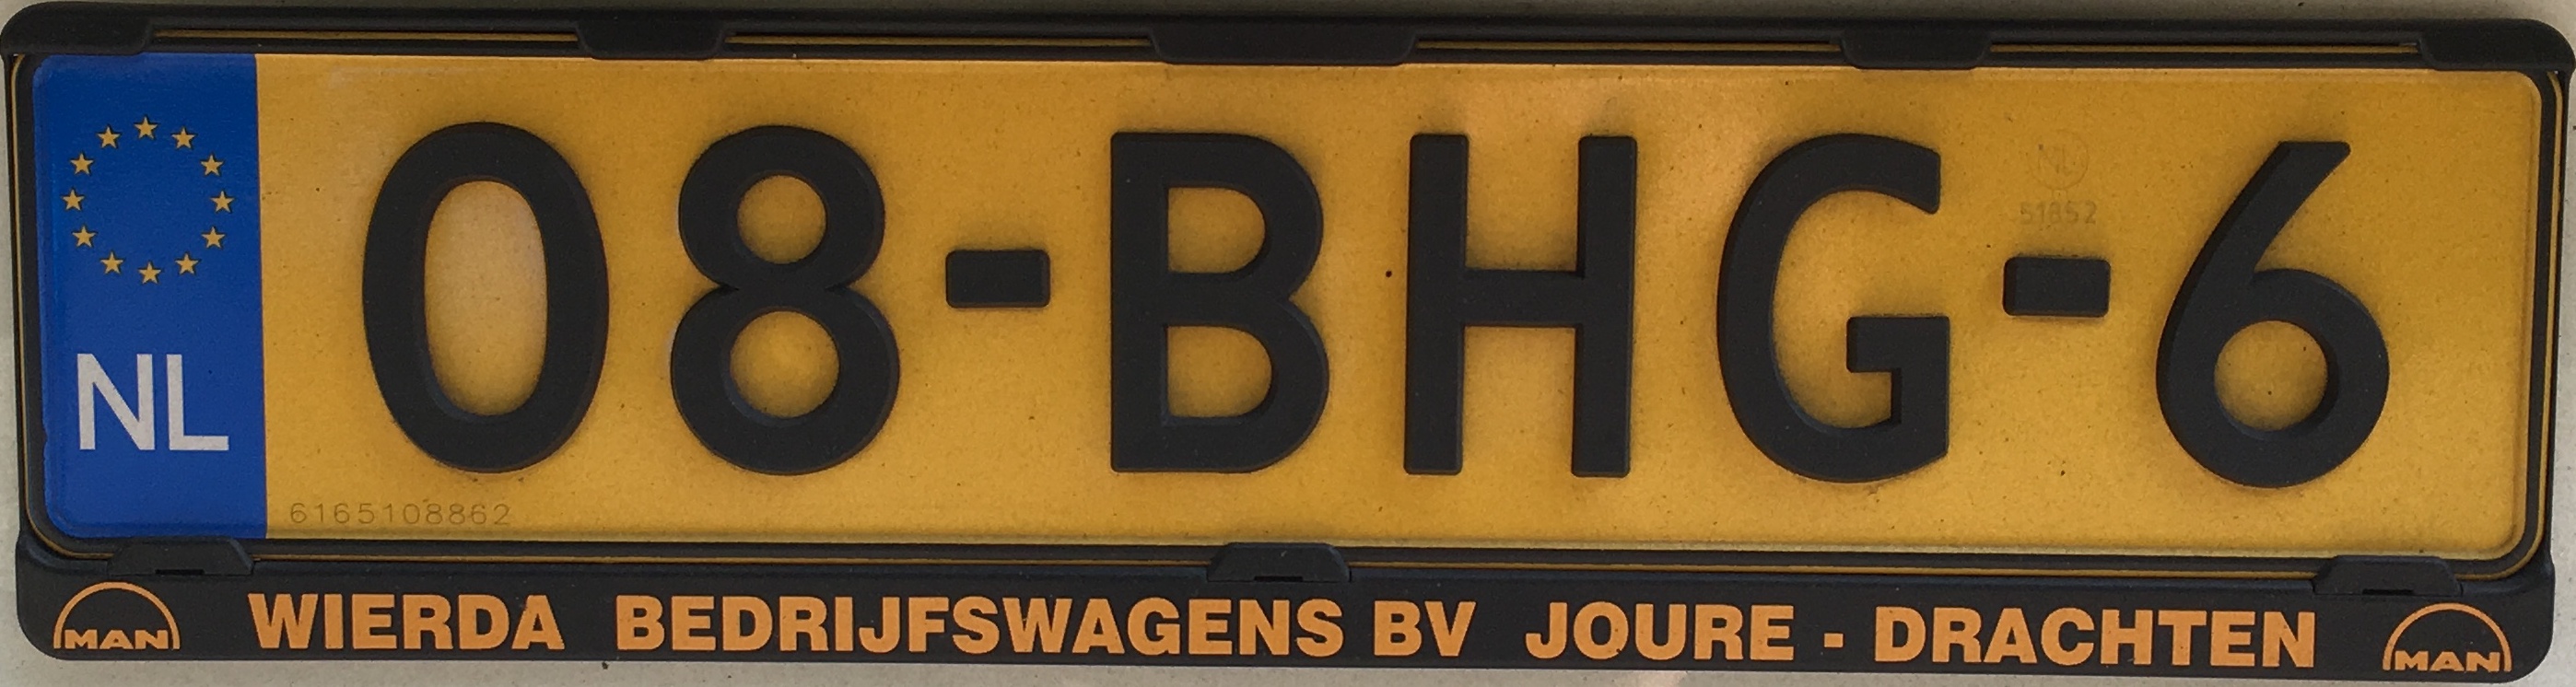 Nizozemská registrační značka – nákladní automobily do 3,5 tuny a autobusy, foto: vlastní